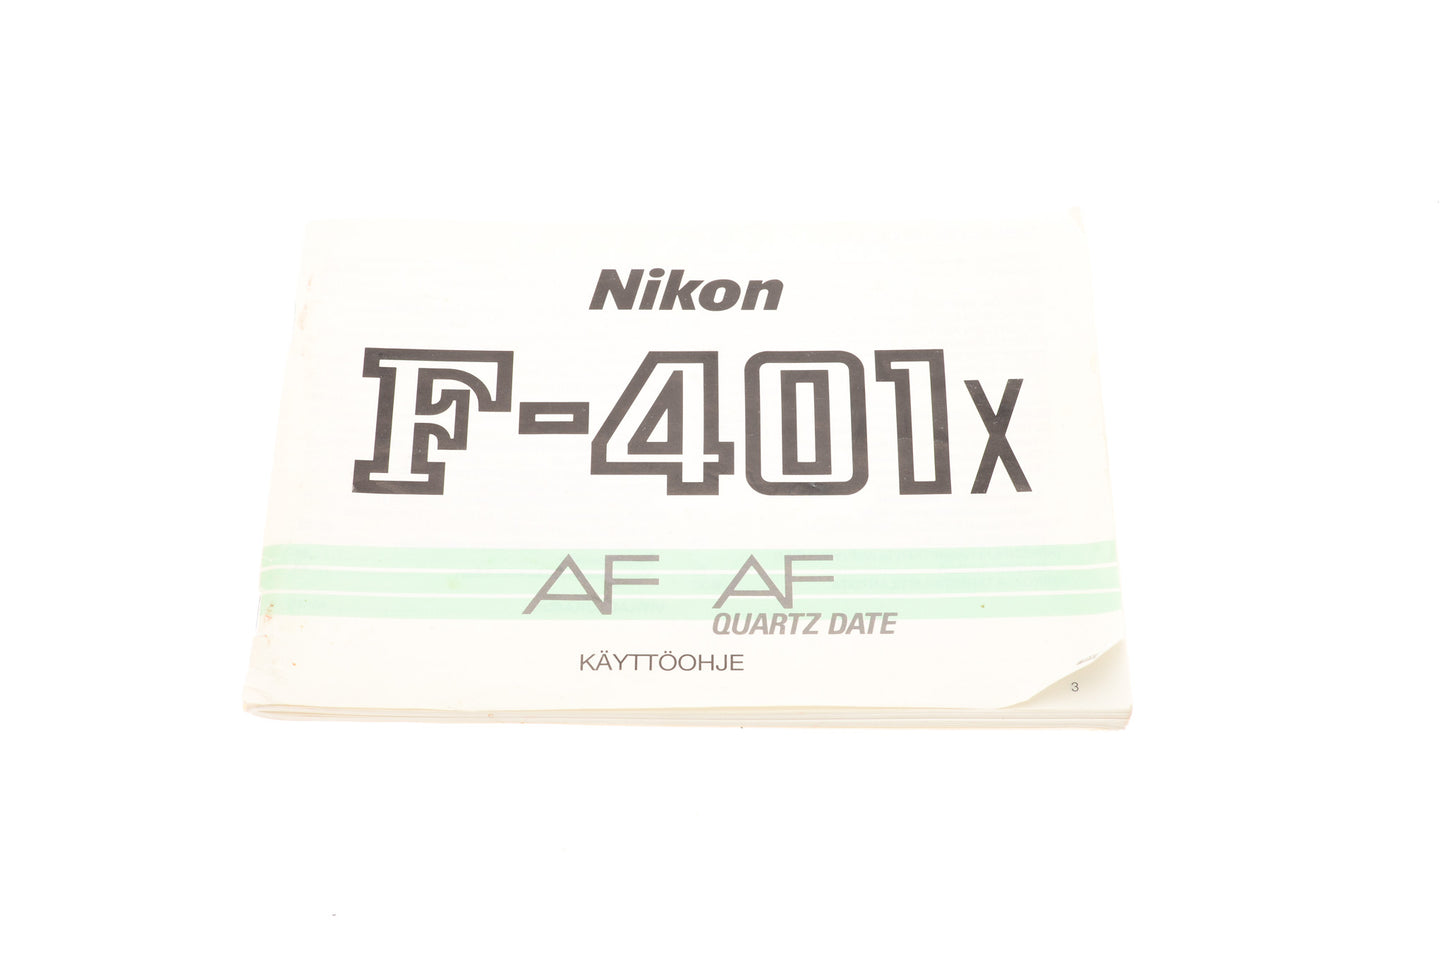 Nikon F-401x AF Quartz Date Käyttöohje - Accessory